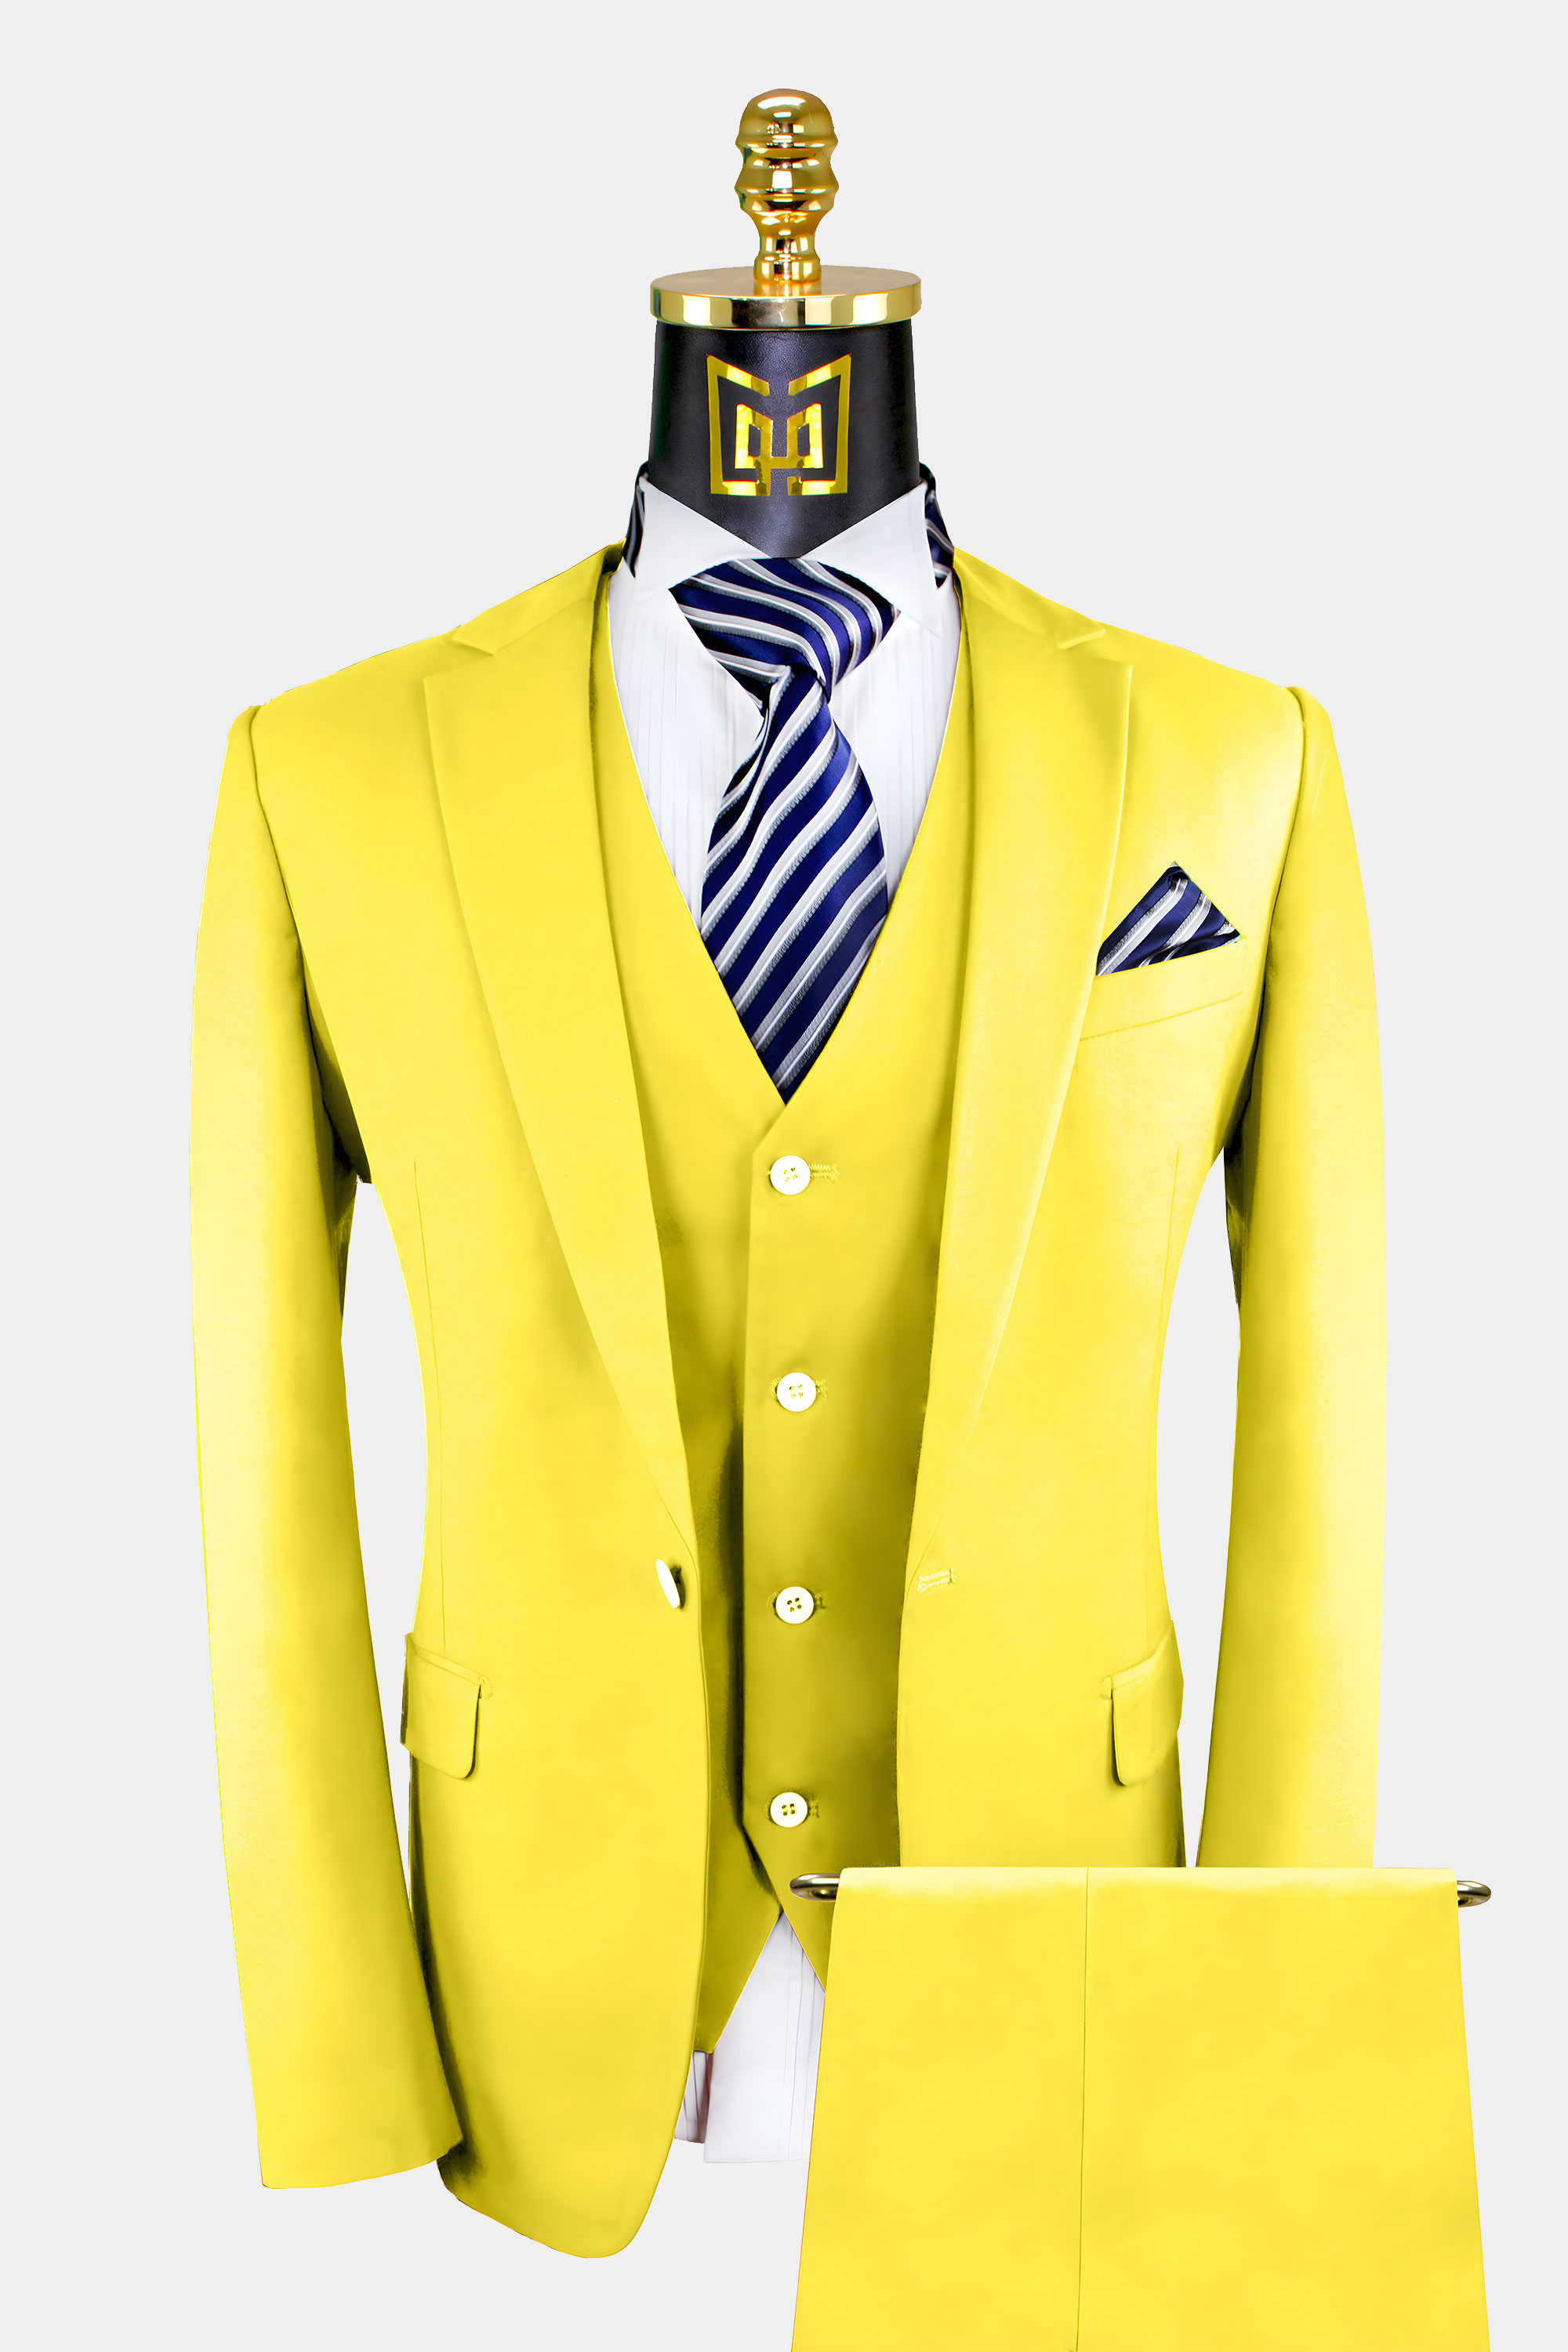 Men's 2-Pieces Slim Fit Linen Suit (Tan) – OMC Formal